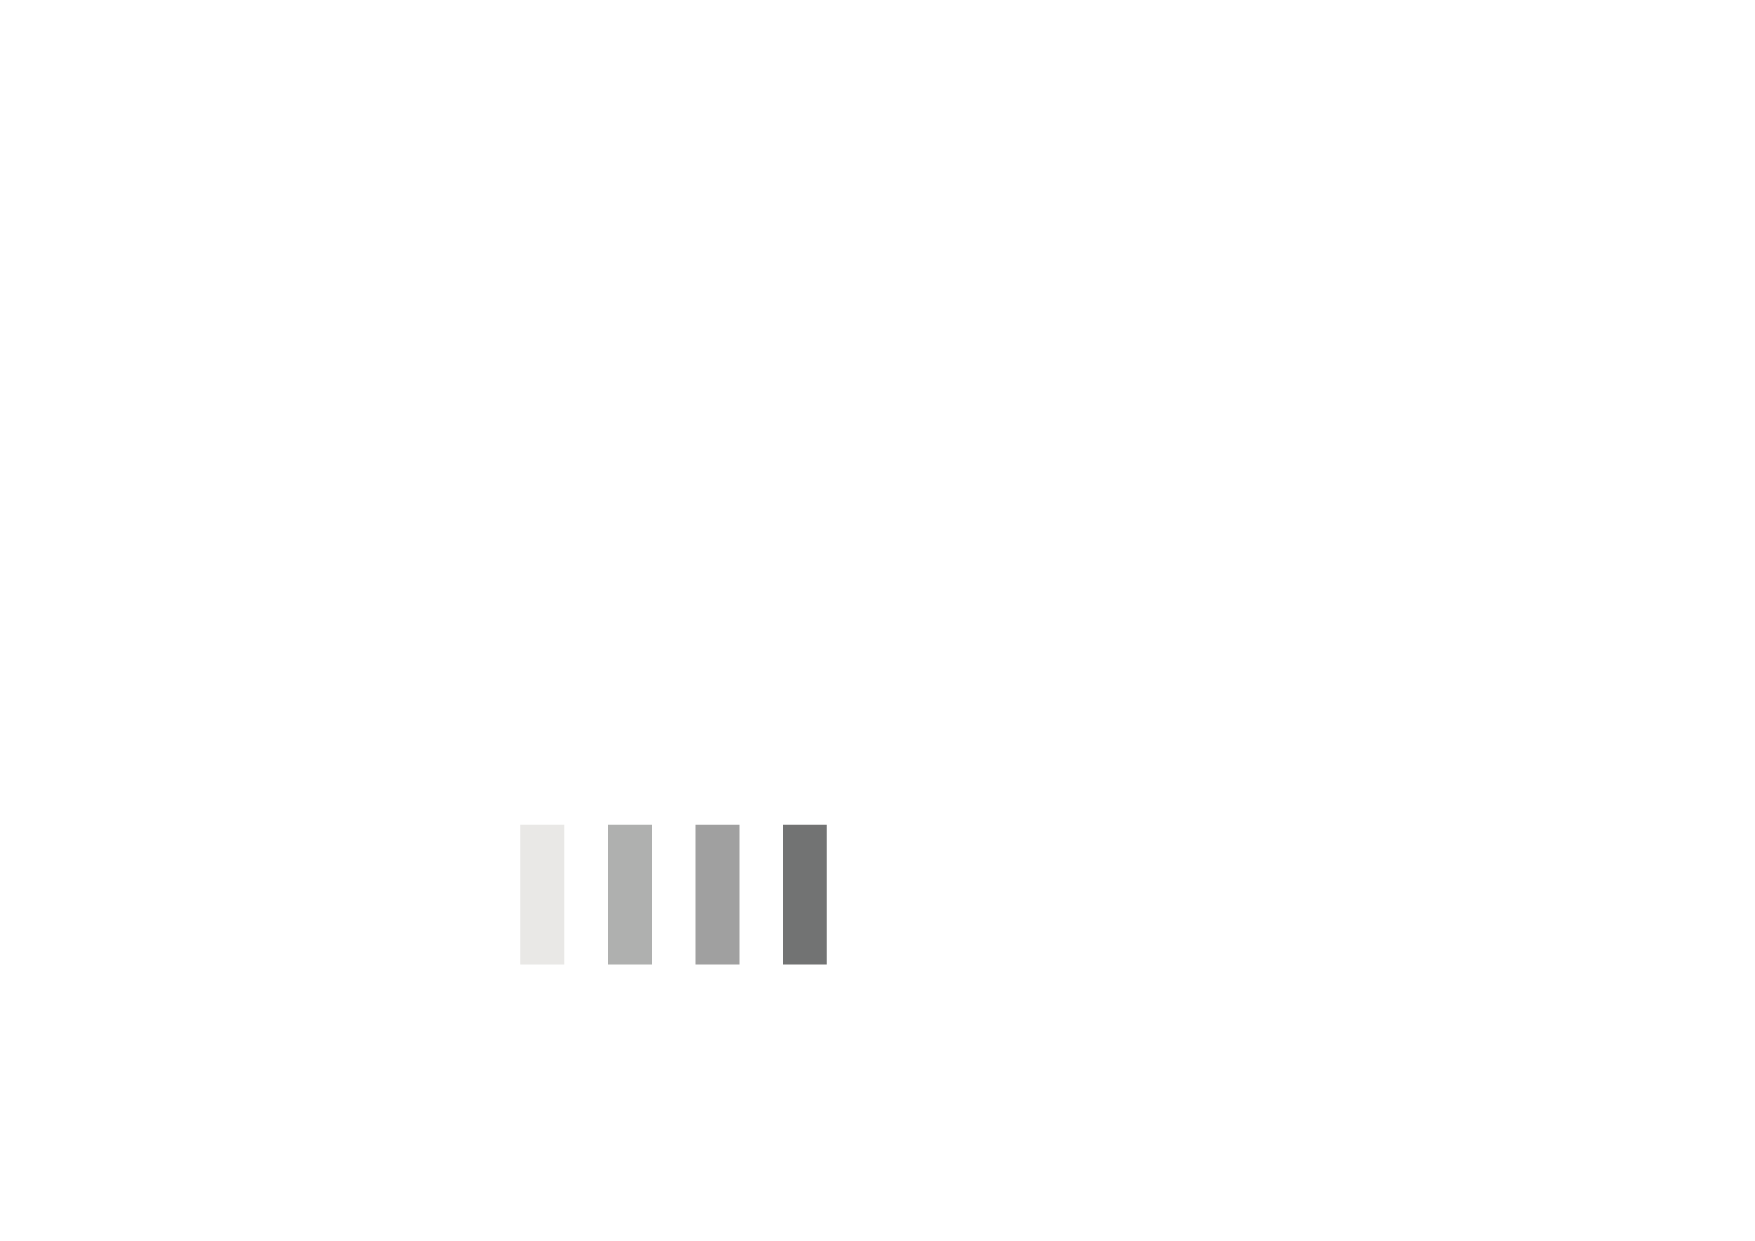 Alpen Berghotels